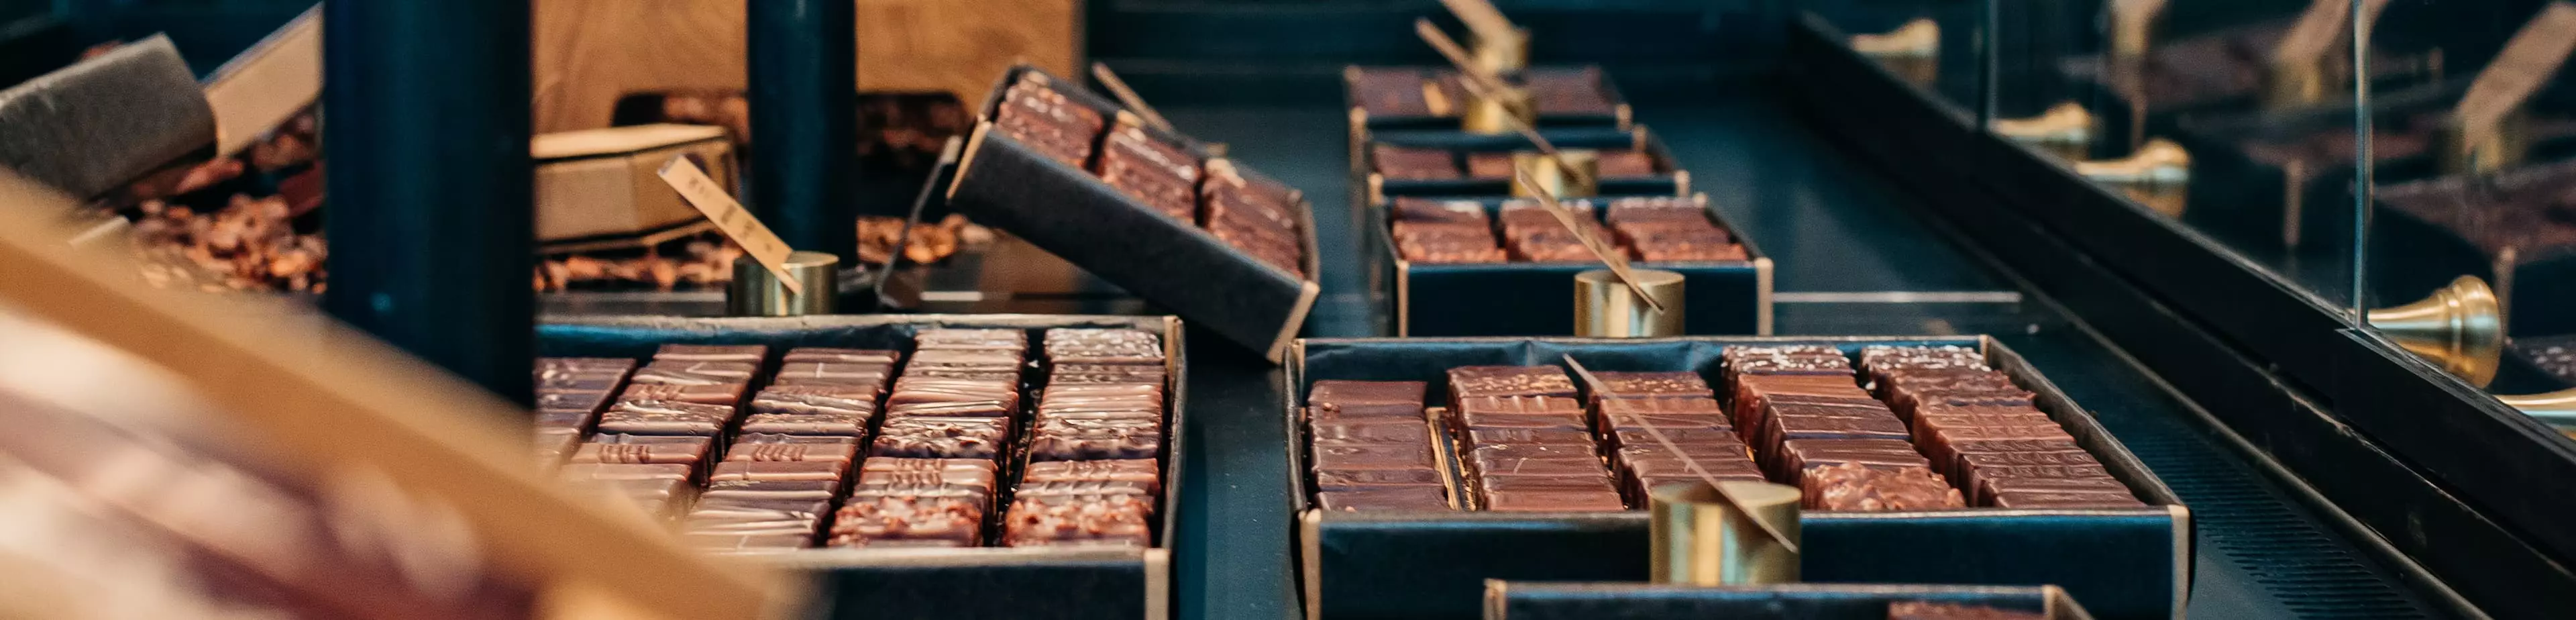 Retrouvez l'intégralité des collections Le Chocolat Alain Ducasse dans nos Comptoirs et Corners.